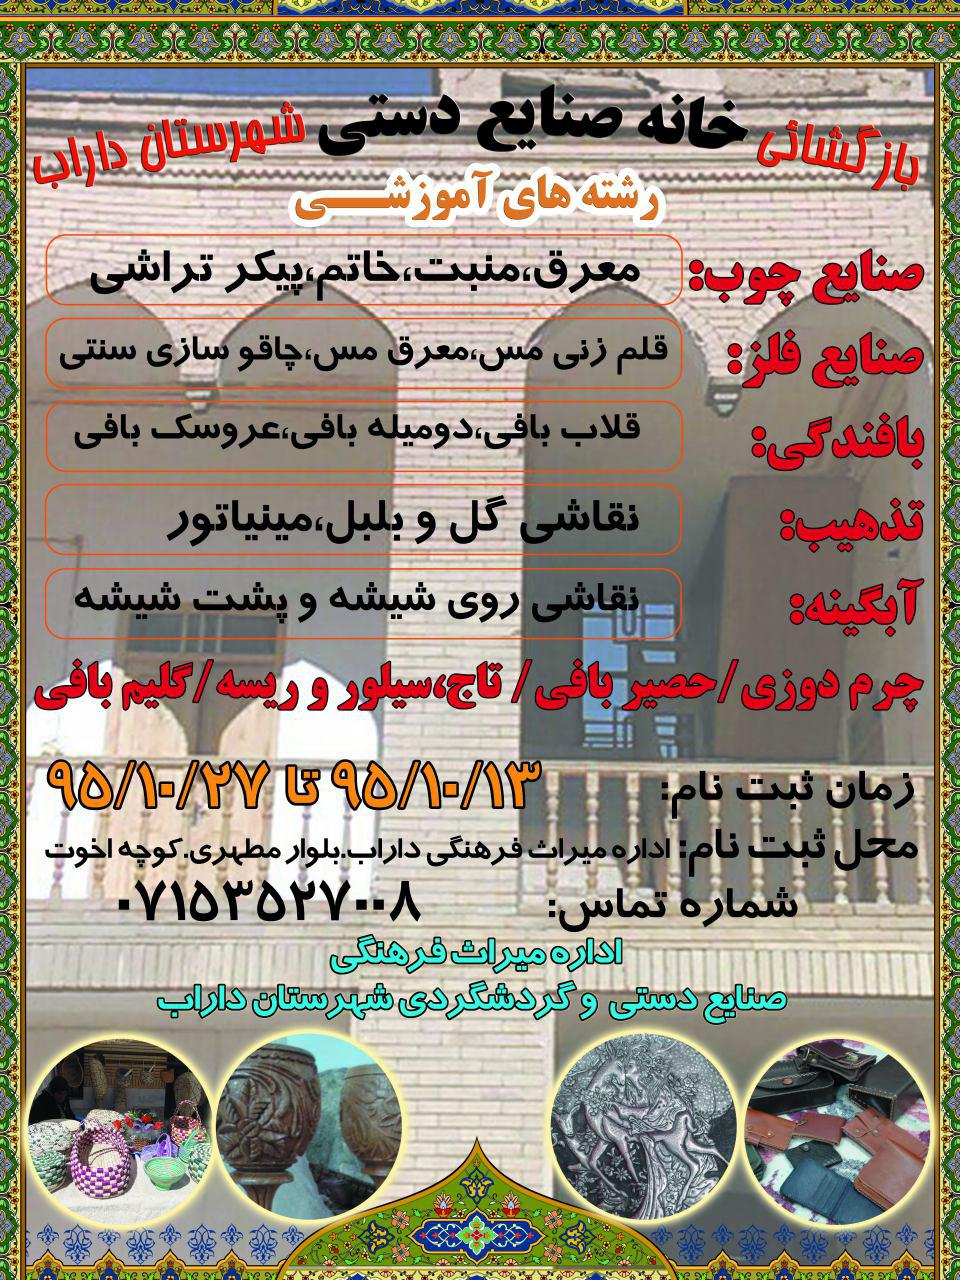 اطلاعیه: بخش الحاقی خانه سوخکیان به عنوان خانه صنایع دستی شهرستان داراب بازگشایی و راه اندازی شد